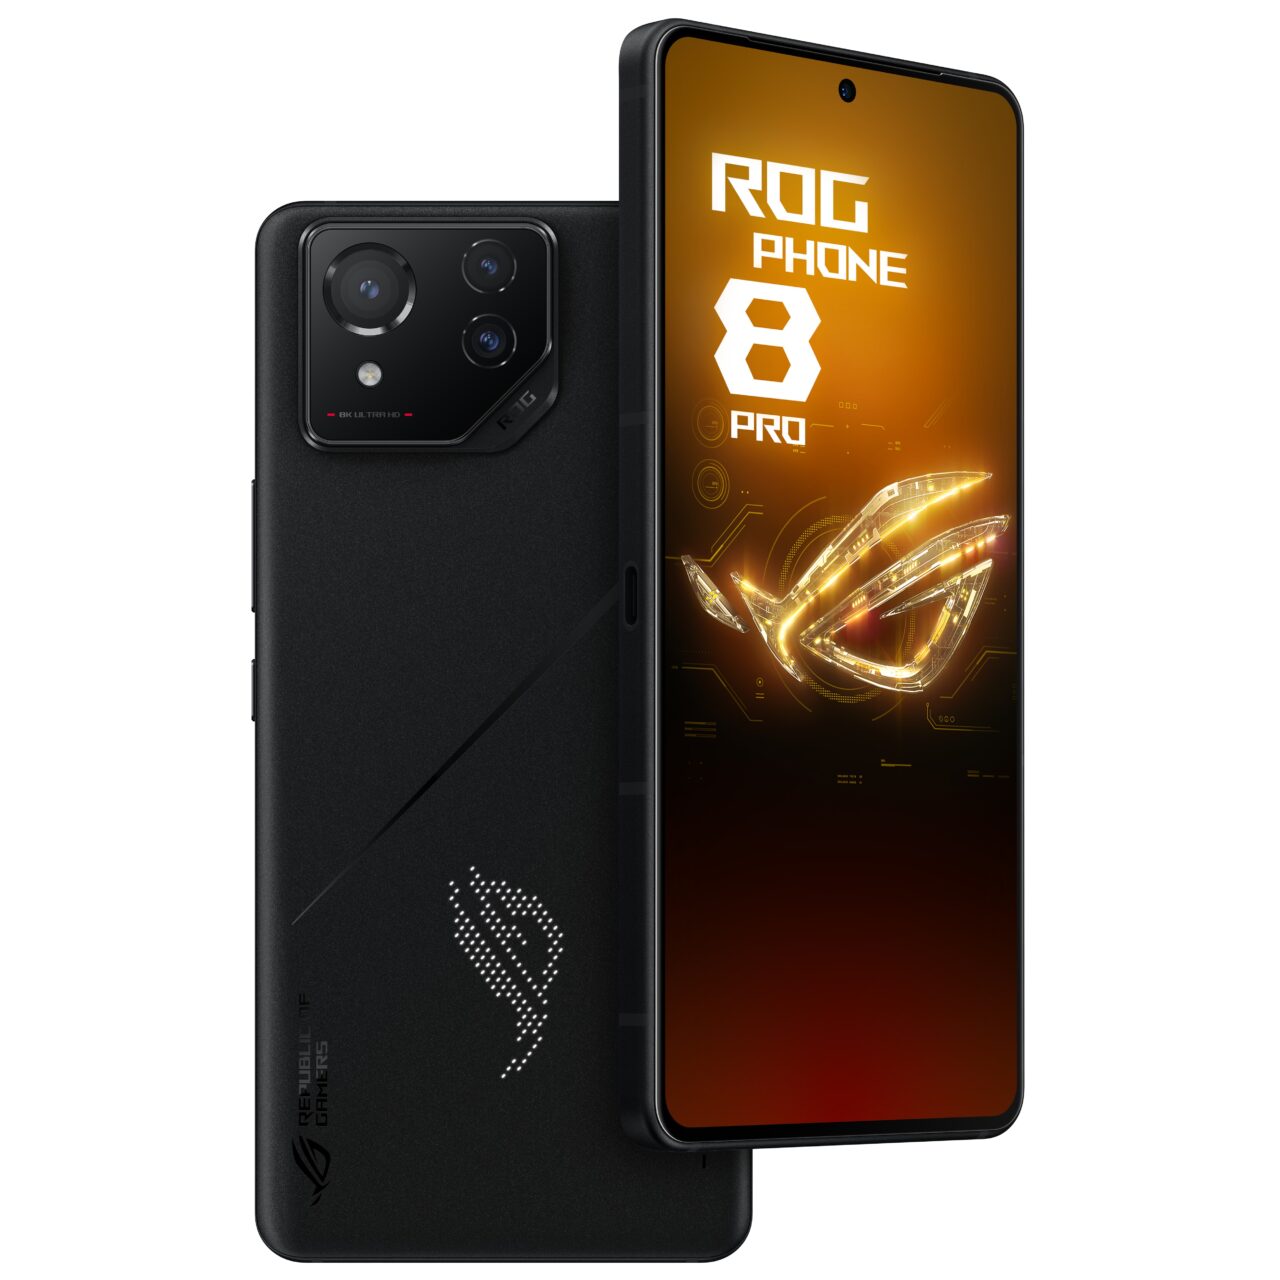 Czarny smartfon ROG Phone 8 Pro z podświetleniem logo ROG na wyświetlaczu i tylnym panelu, pokazany od przodu i z boku z widocznymi przyciskami i aparatem.